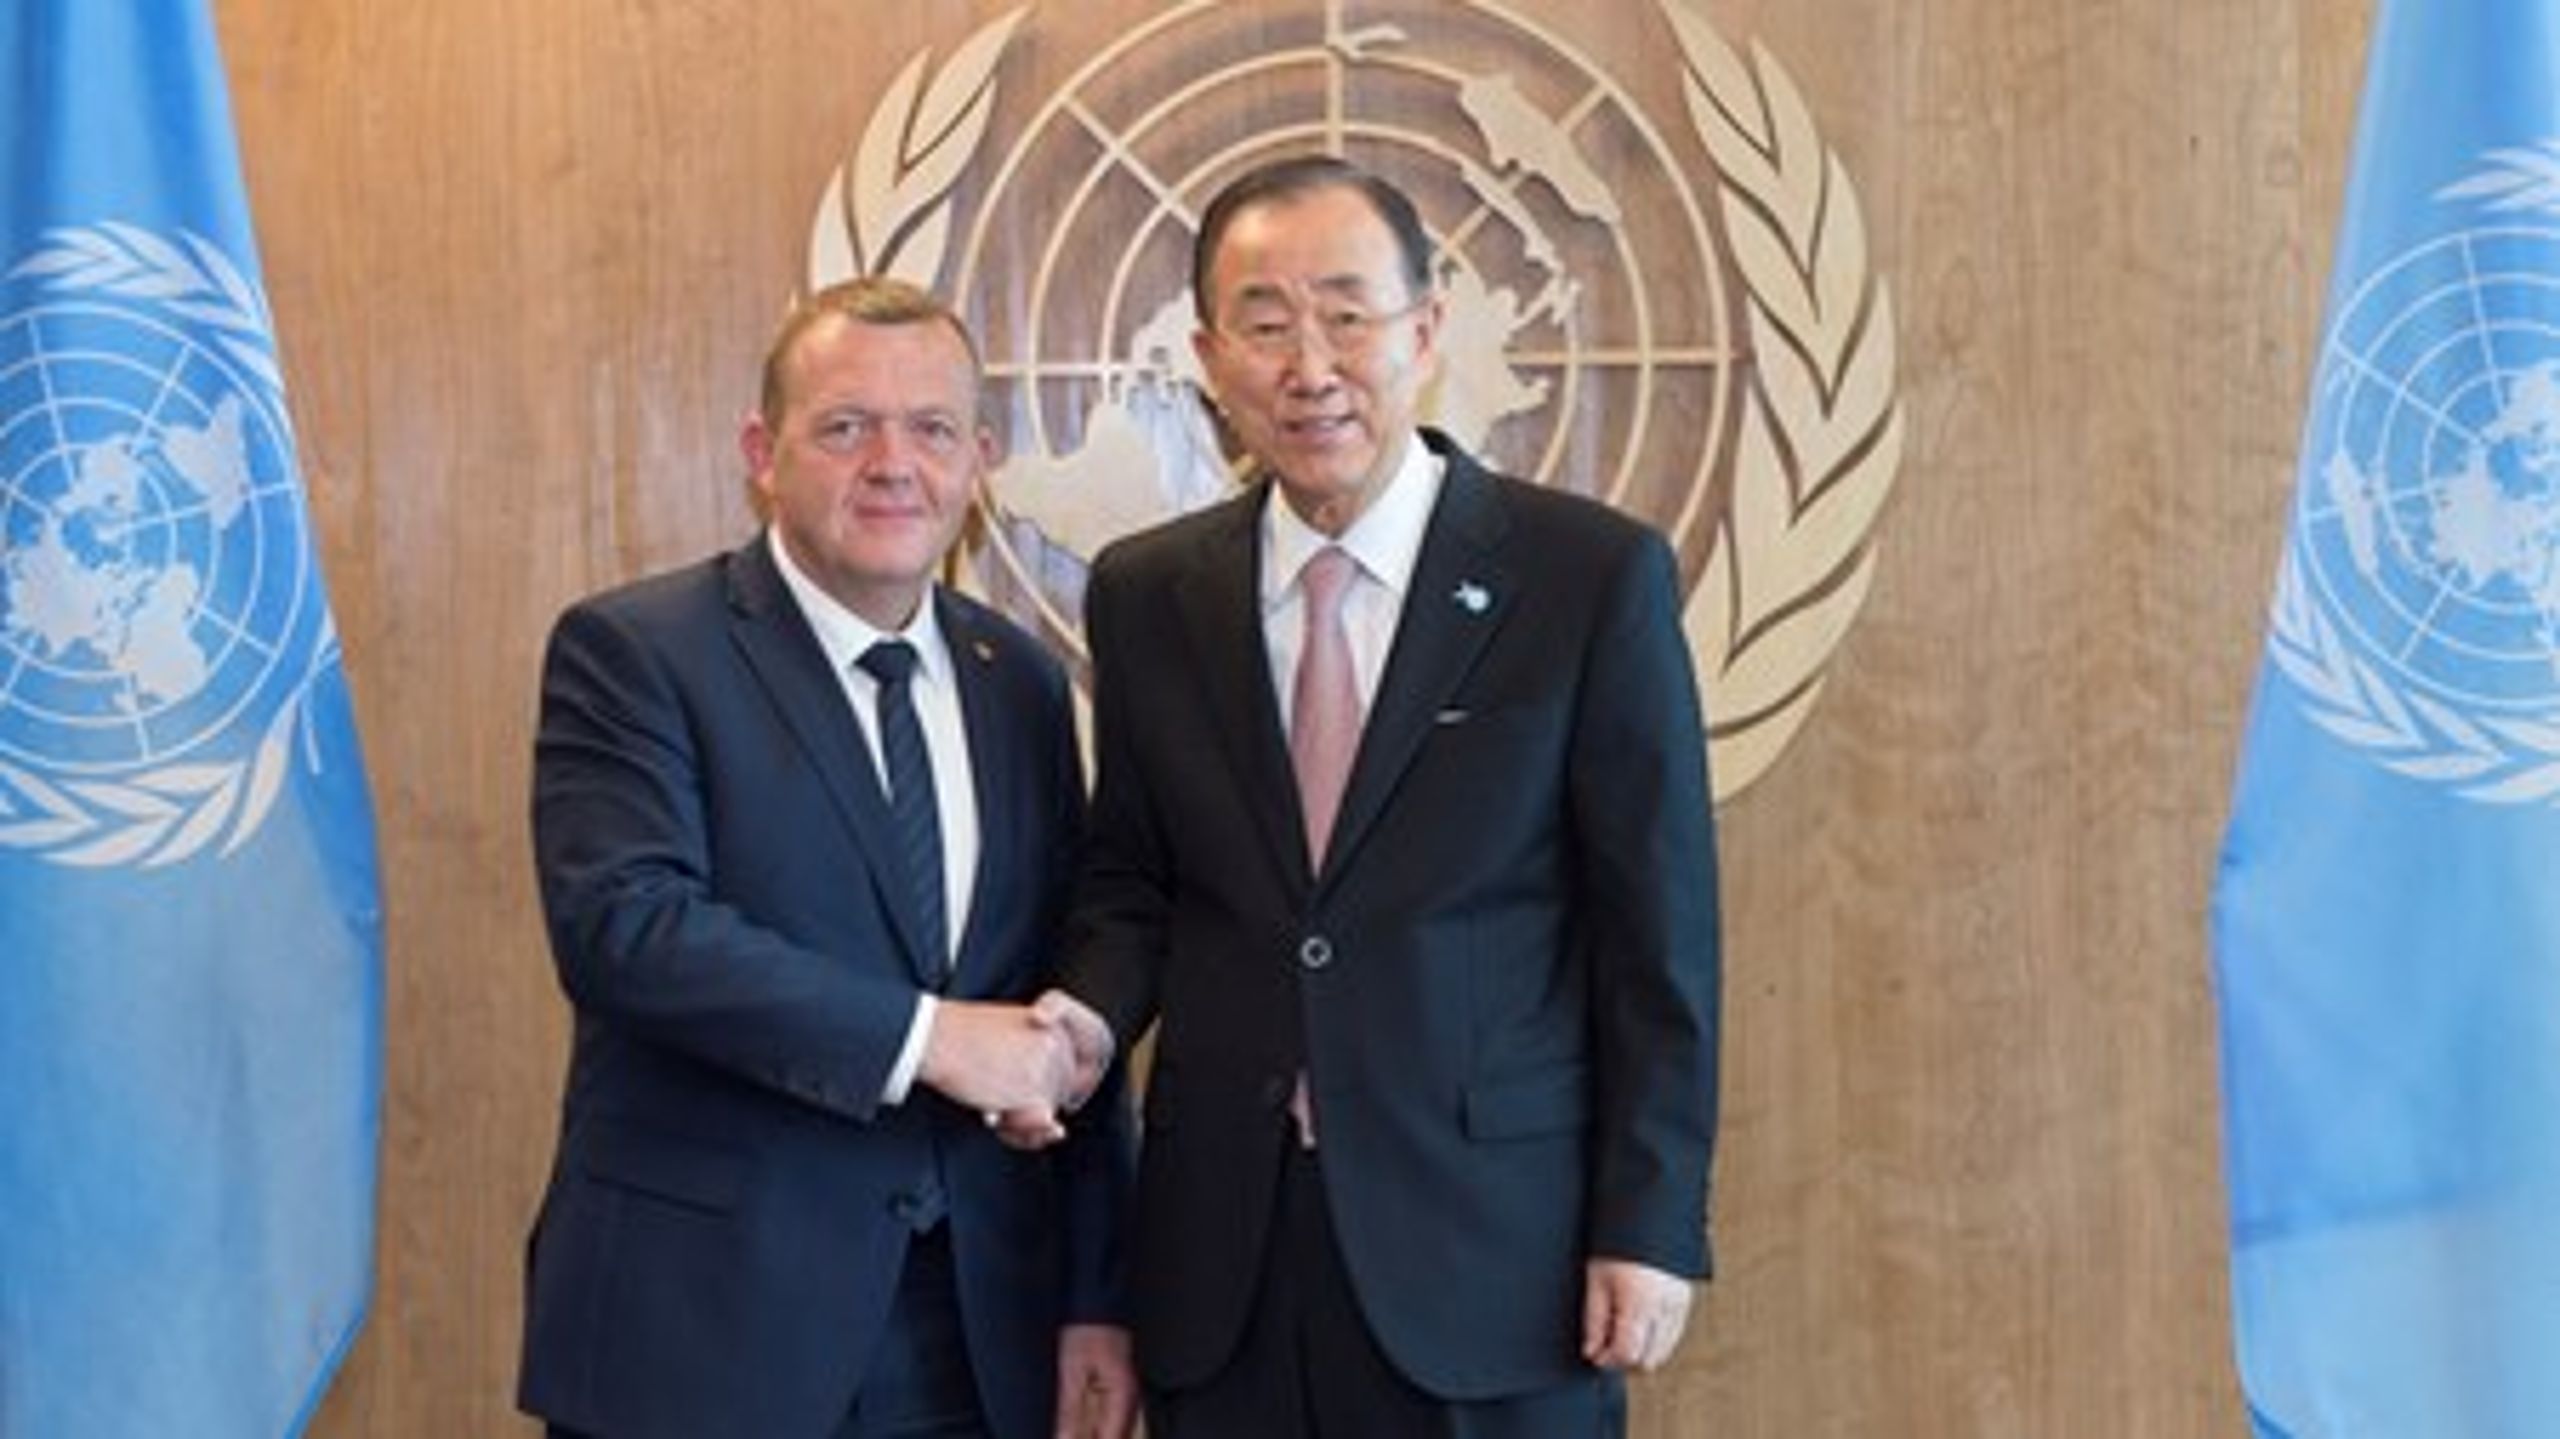 Statsminister Lars Løkke Rasmussen (V) møder FN-generalsekretær Ban Ki-moon ved FN-topmøde.